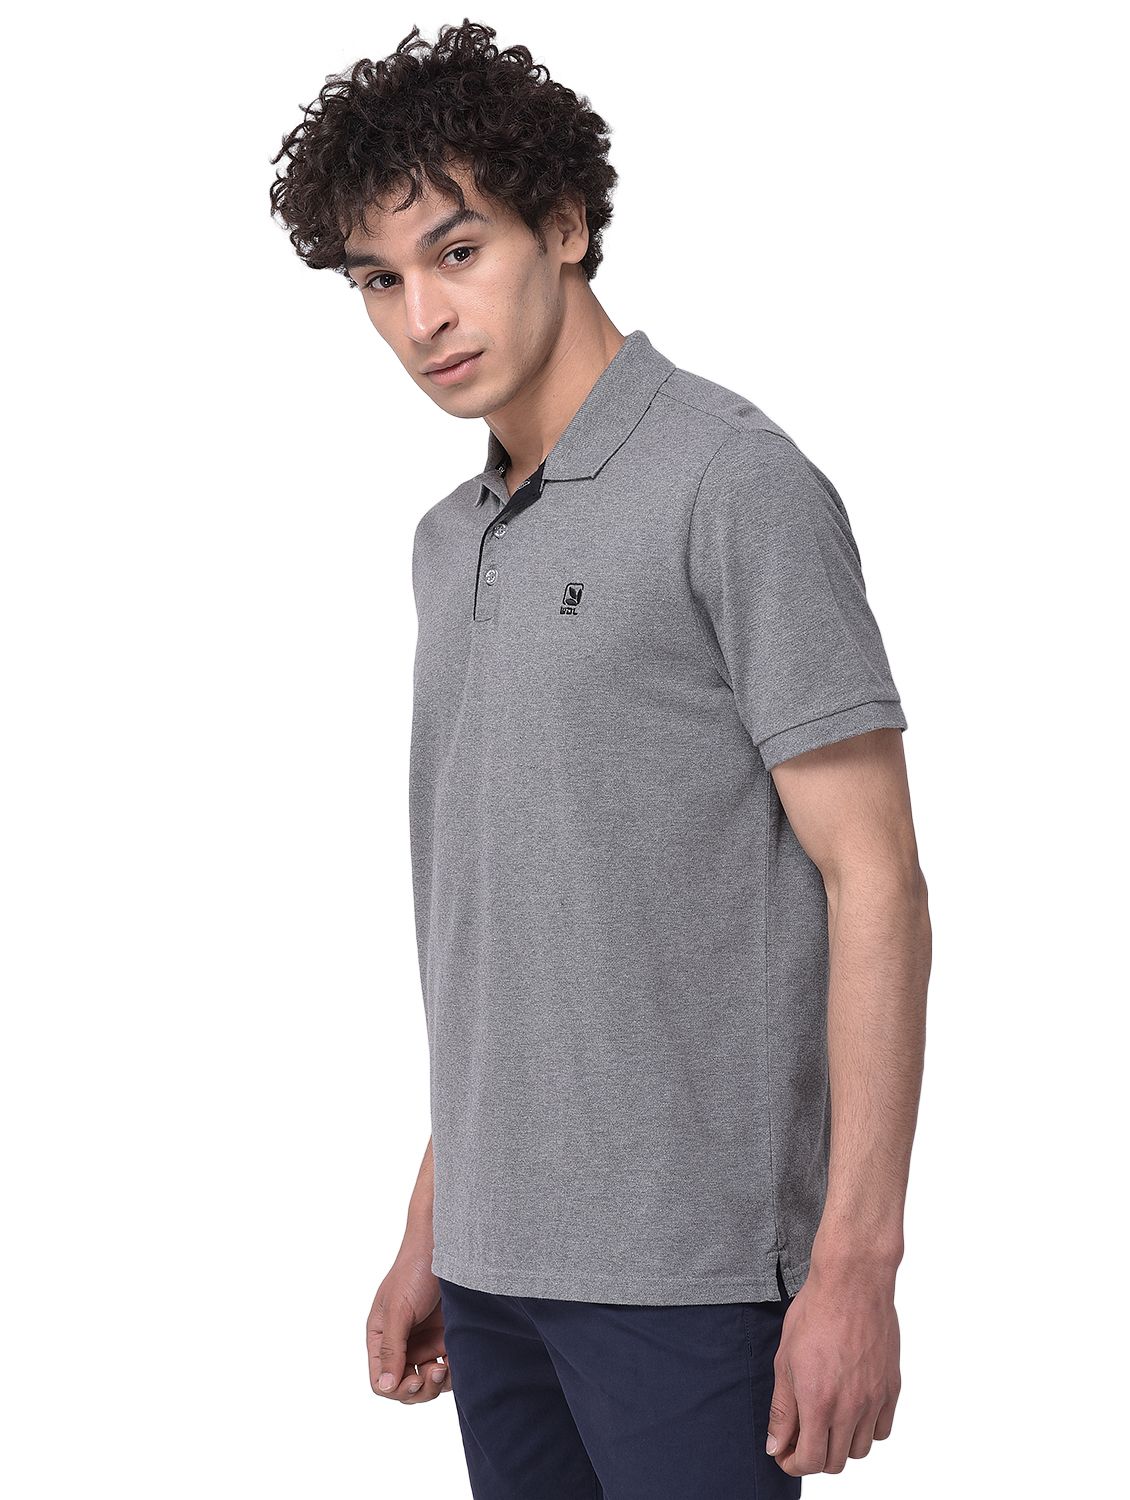 Medium grey polo neck t-shirt for men